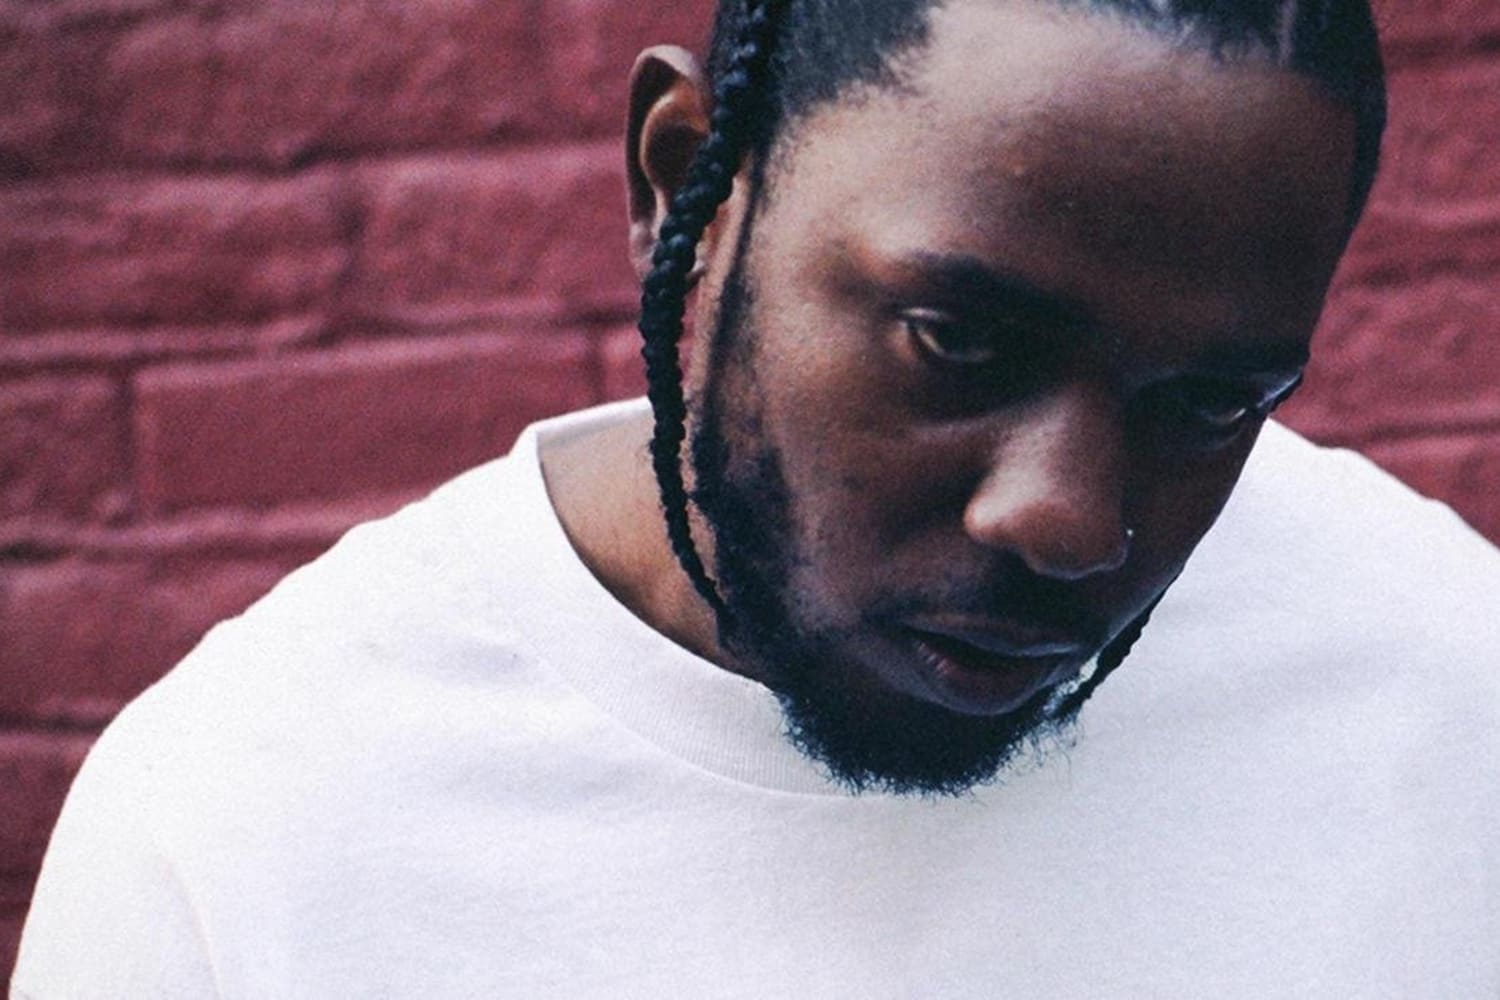 O novo álbum do Kendrick Lamar é bom mesmo?